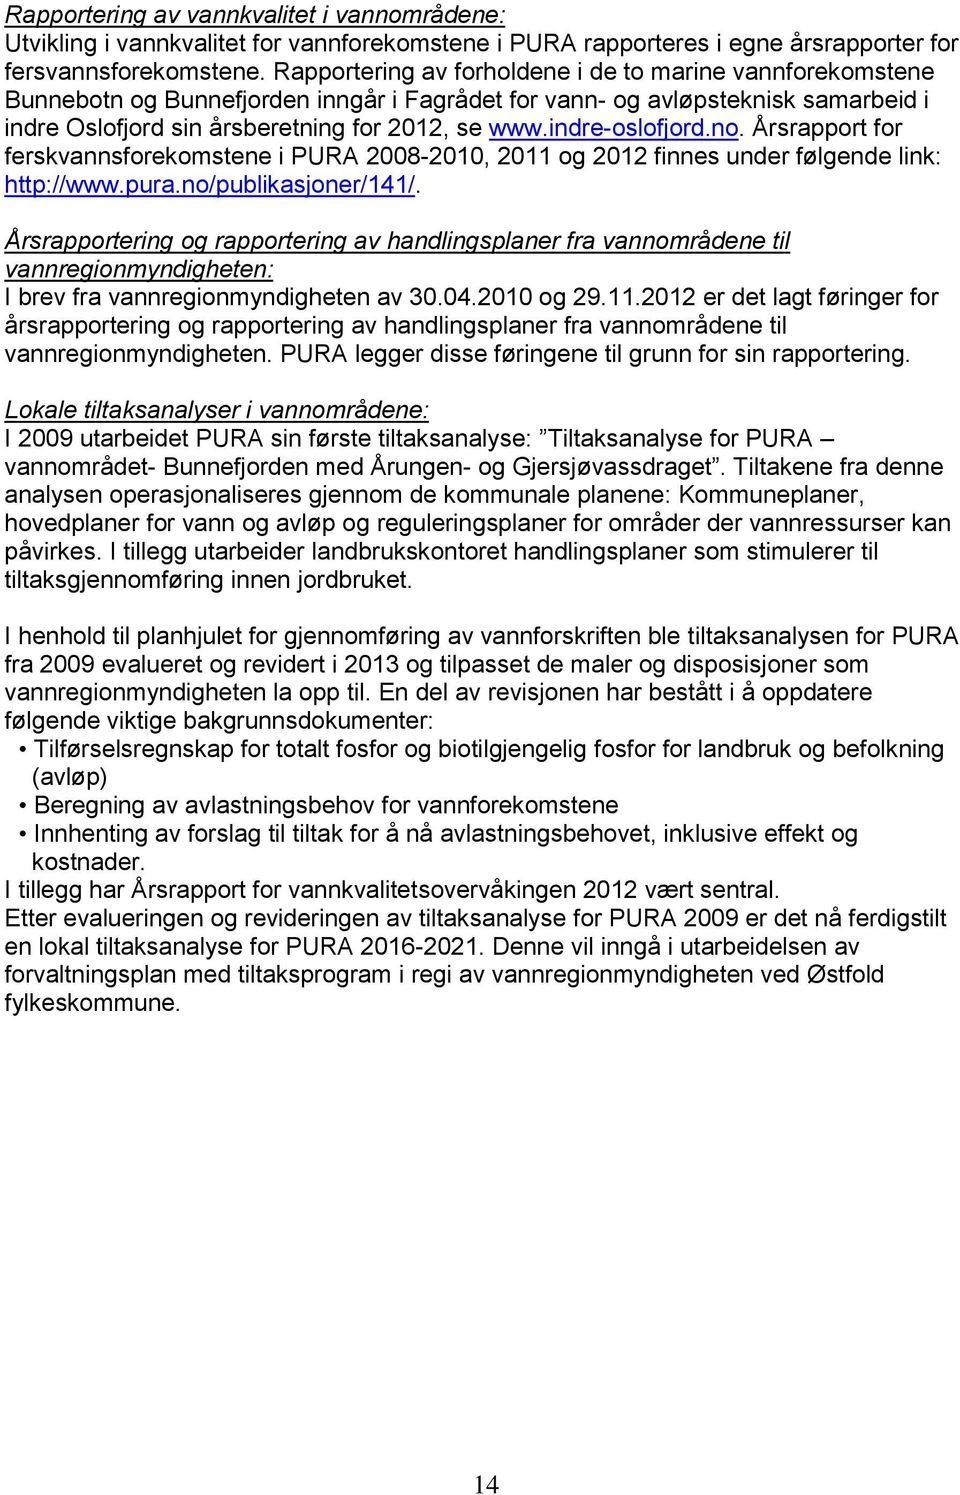 indre-oslofjord.no. Årsrapport for ferskvannsforekomstene i PURA 2008-2010, 2011 og 2012 finnes under følgende link: http://www.pura.no/publikasjoner/141/.